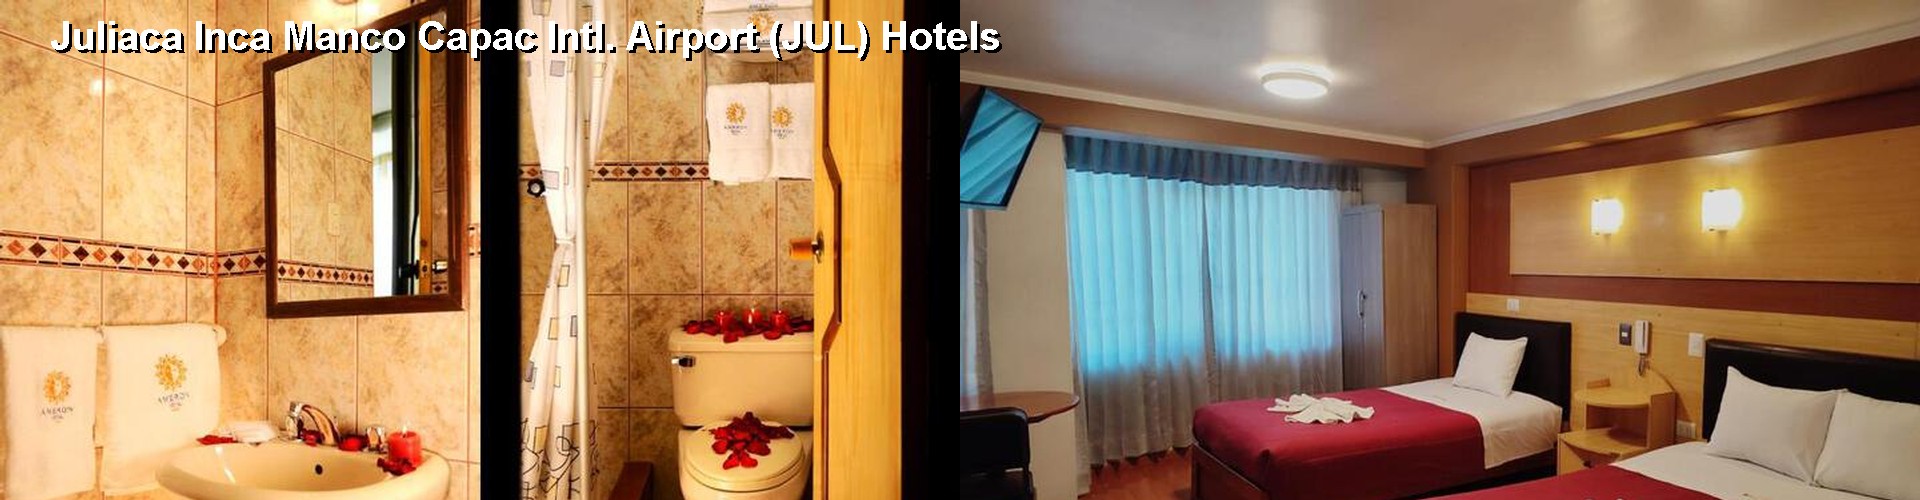 5 Best Hotels near Juliaca Inca Manco Capac Intl. Airport (JUL)